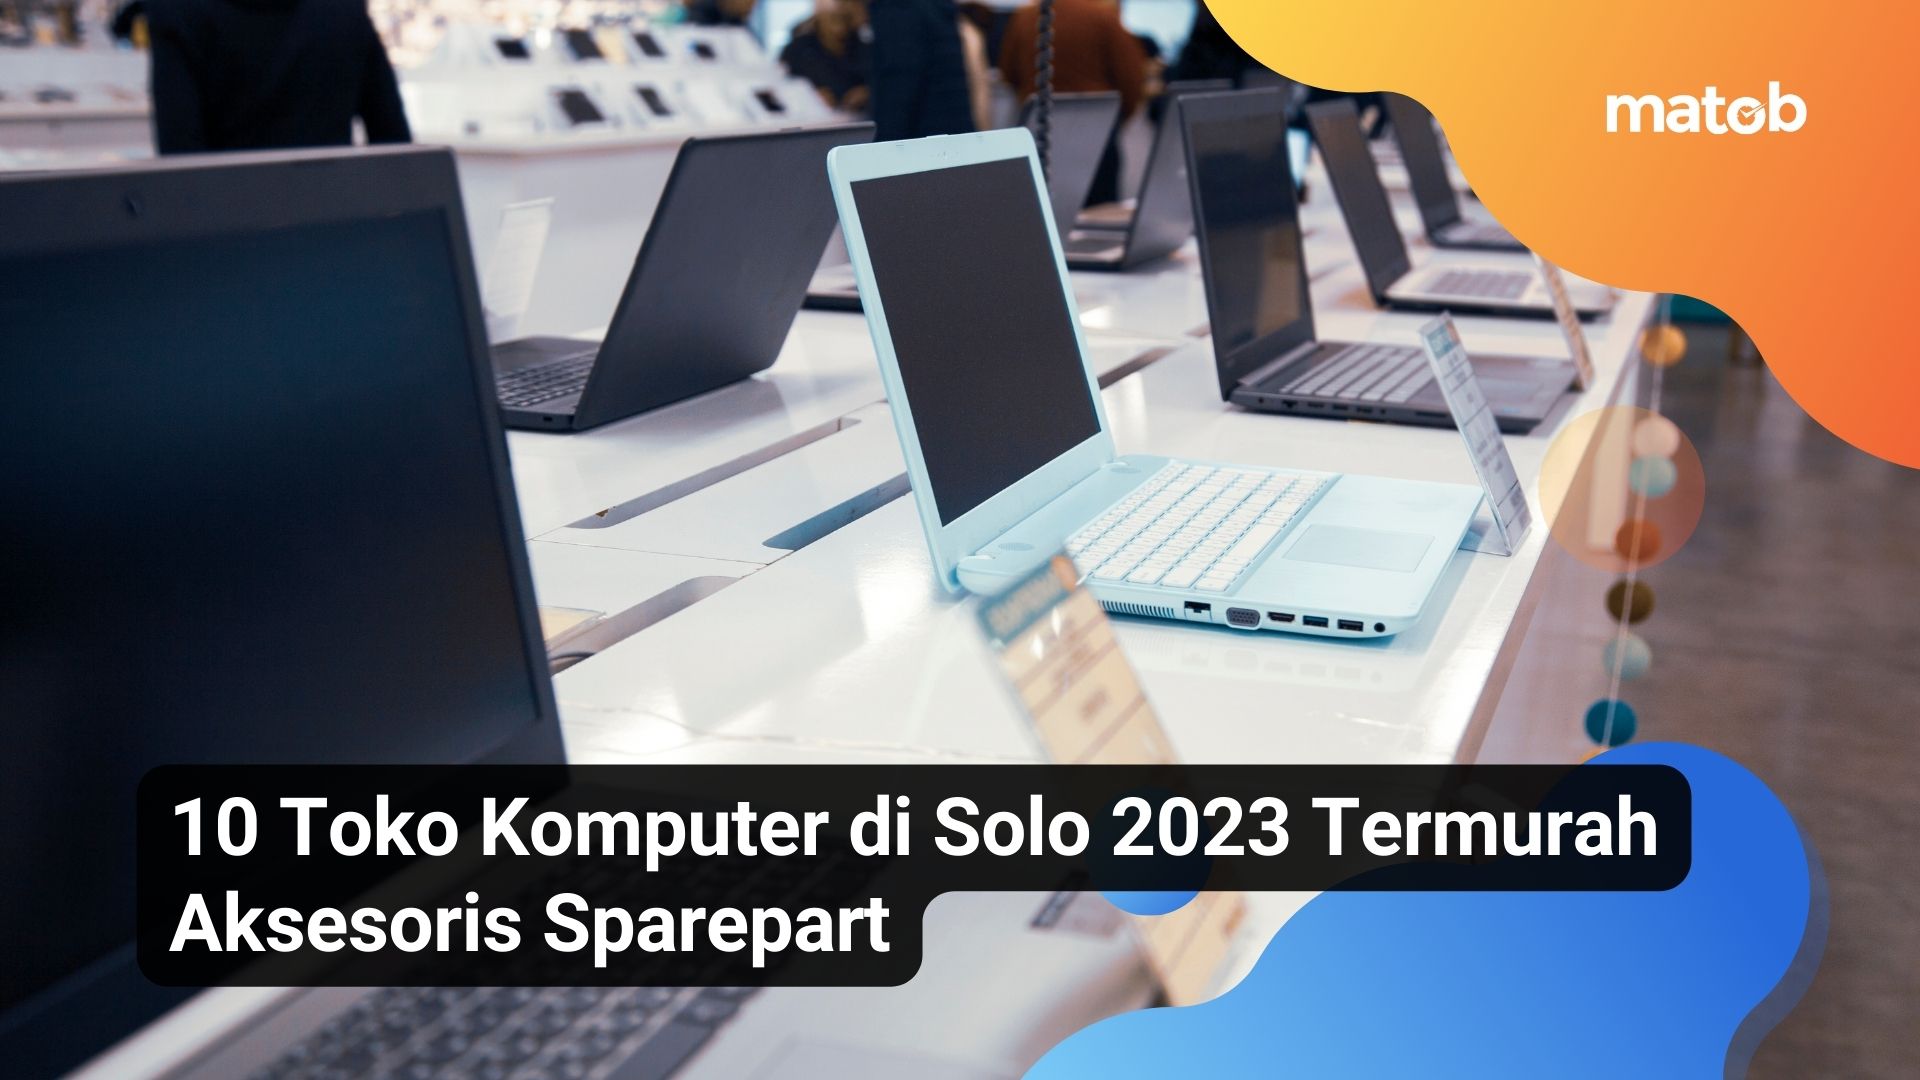 10 Toko Komputer di Solo 2023 Termurah Aksesoris Sparepart